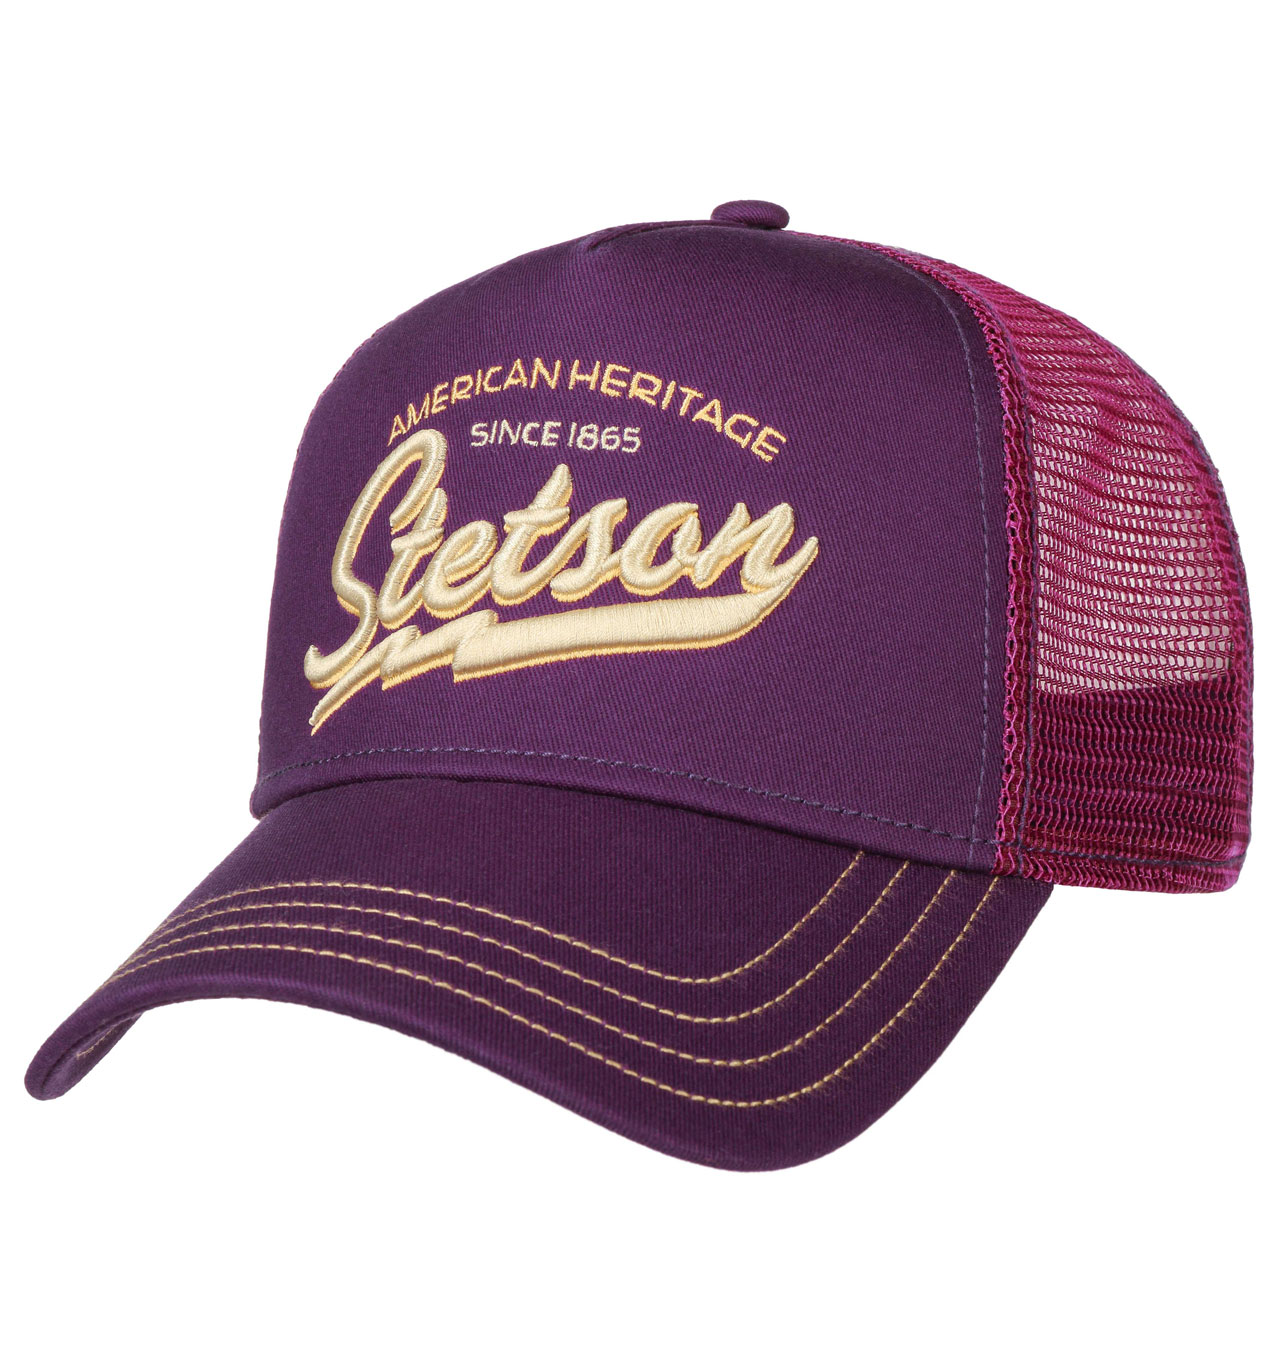 Stetson - Since 1865 Trucker Cap - Purple